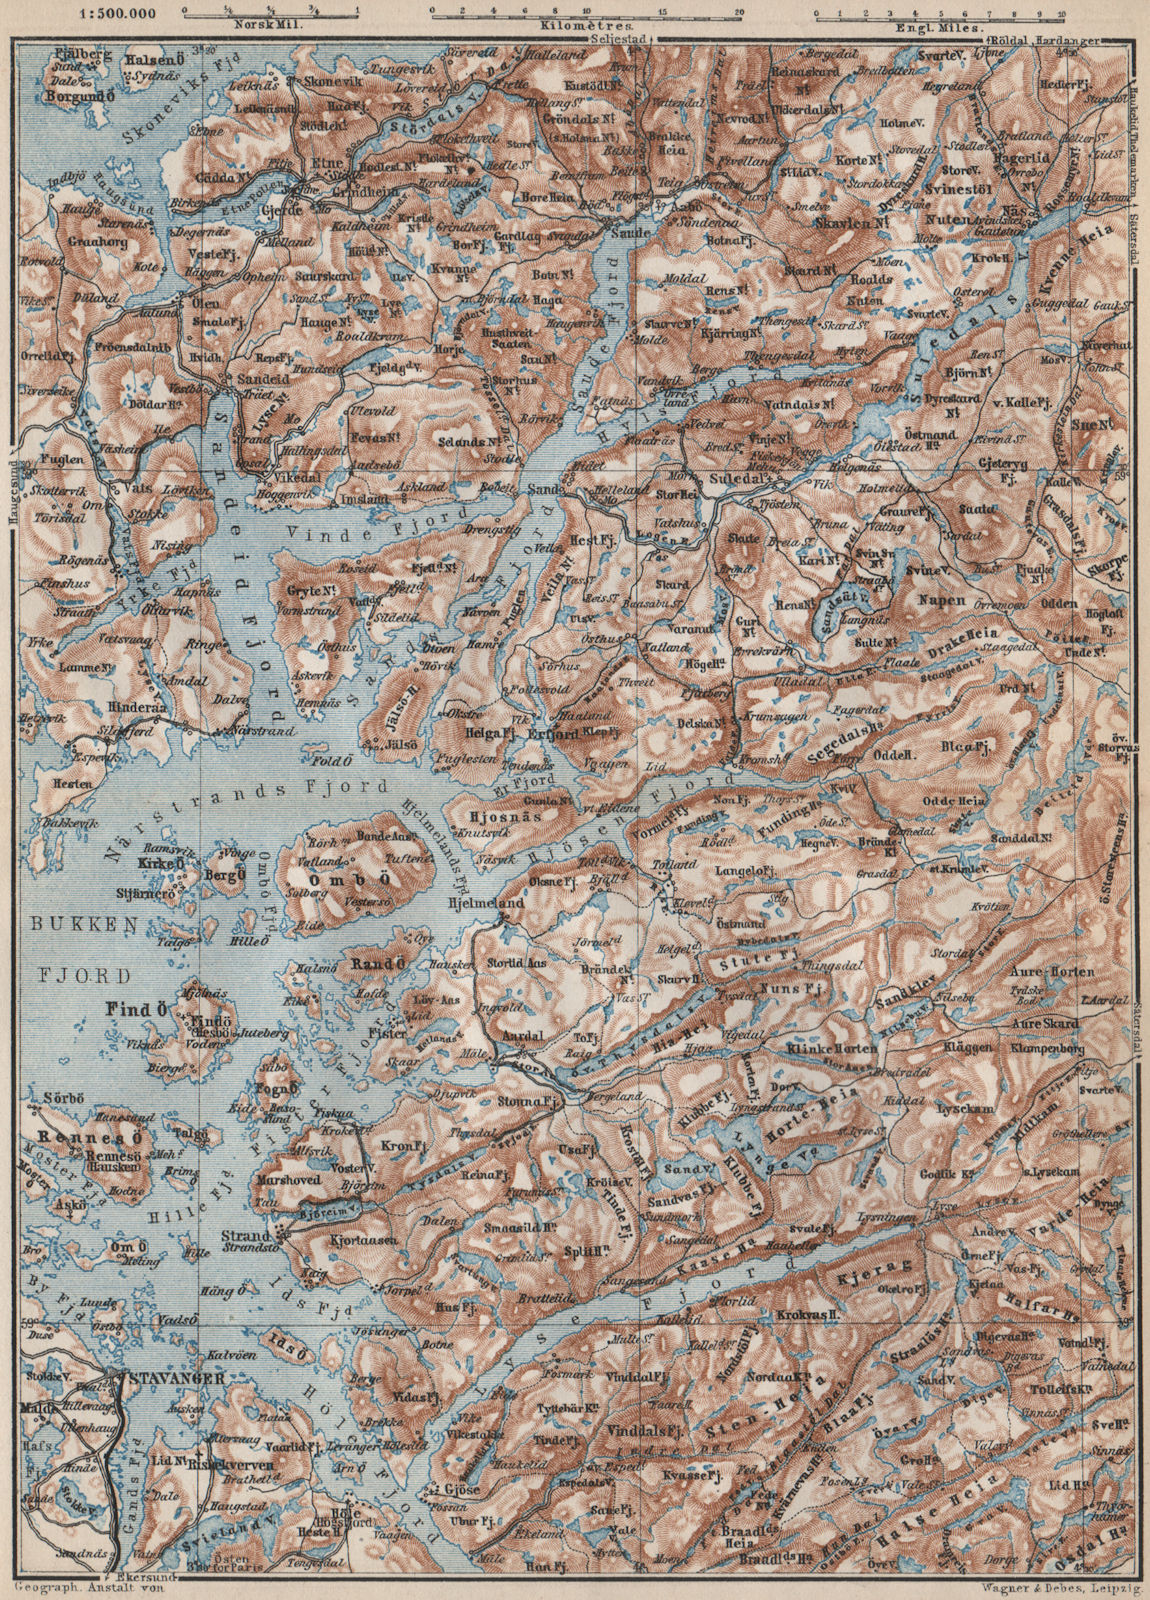 STAVANGER/BOKNA FJORD topo-map. Nedstrand Tau Sauda Etne. Norway kart 1885